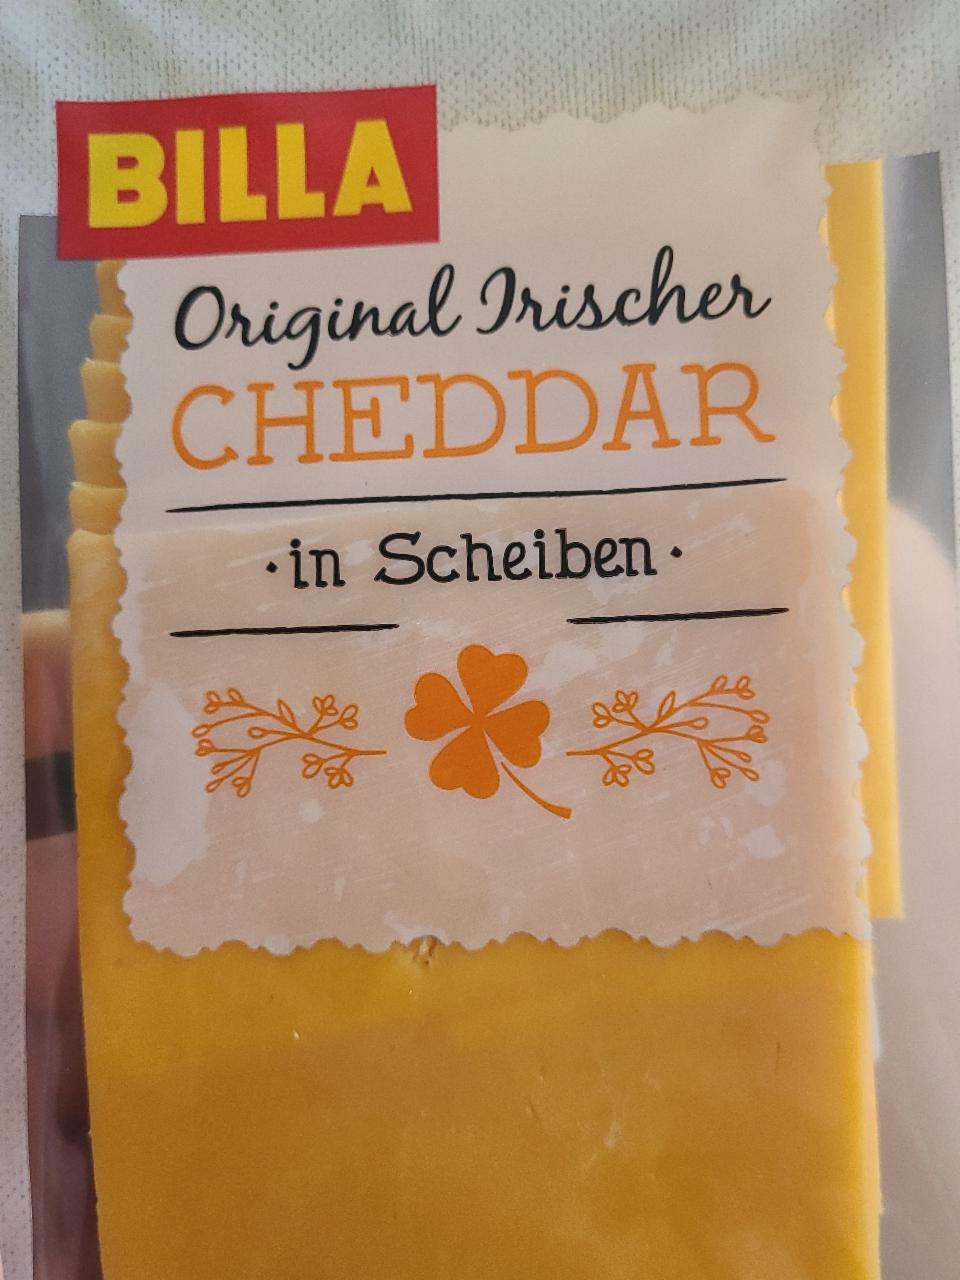 Fotografie - Original Irische Cheddar in Scheiben Billa